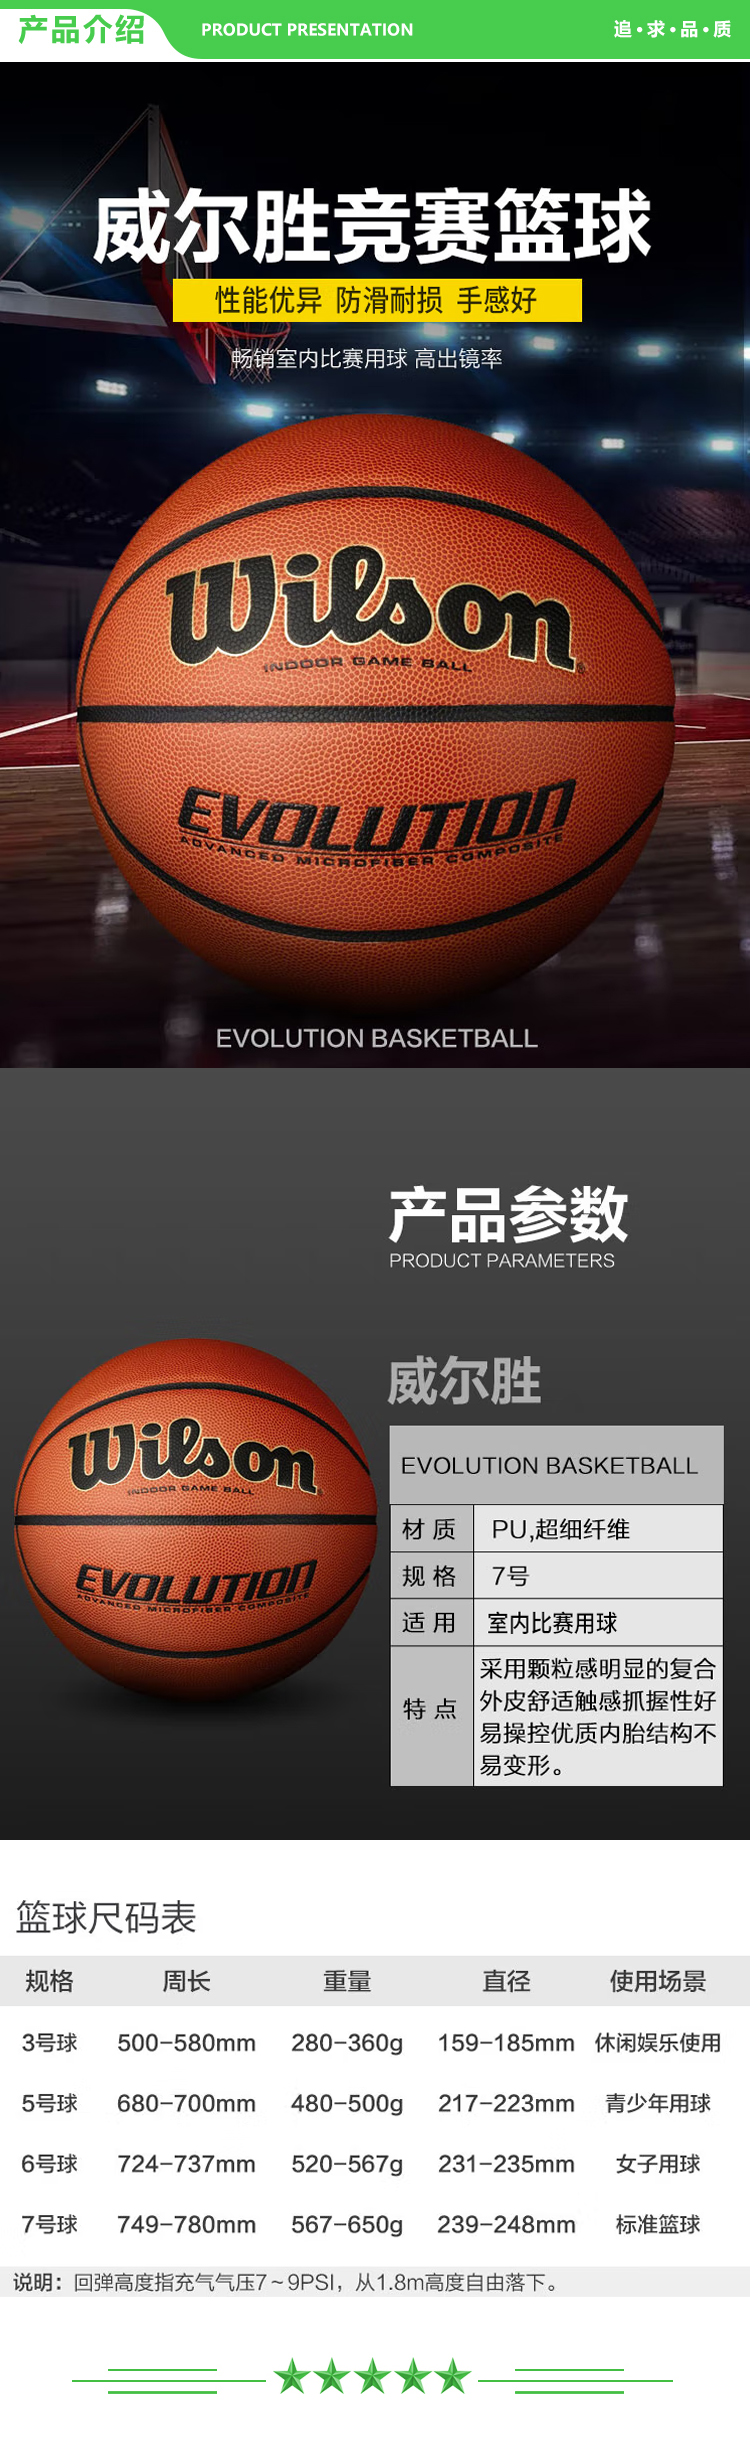 威尔胜 Wilson WTB0516IB07CN Evolution系列全美高中校队比赛用球篮球超纤耐磨室内7号 .jpg